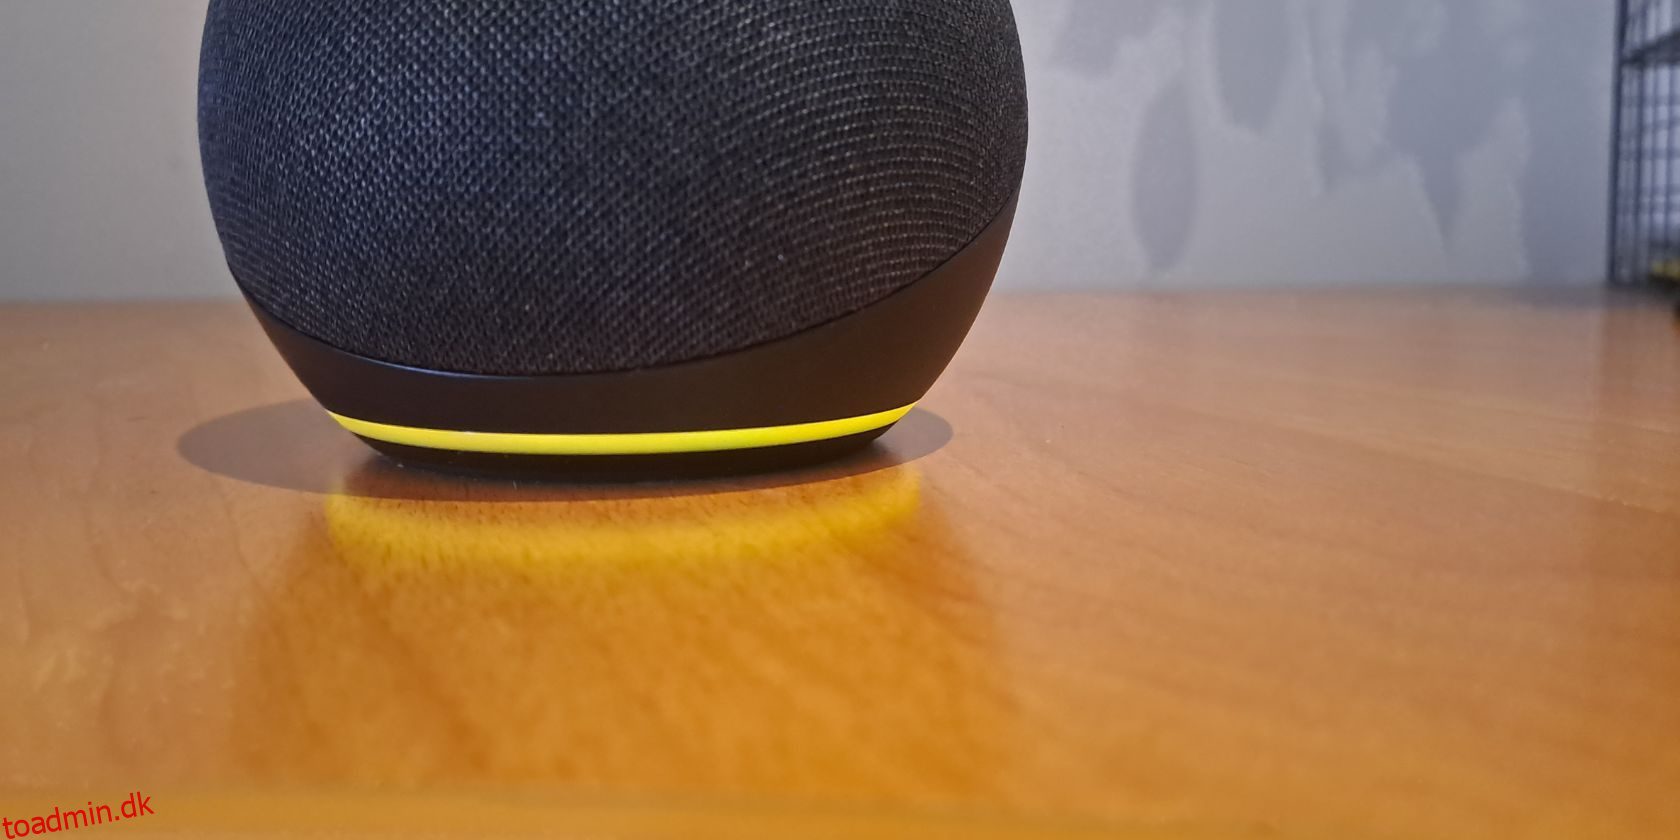 Sådan deaktiveres det gule blinkende lys på din Amazon Echo-enhed